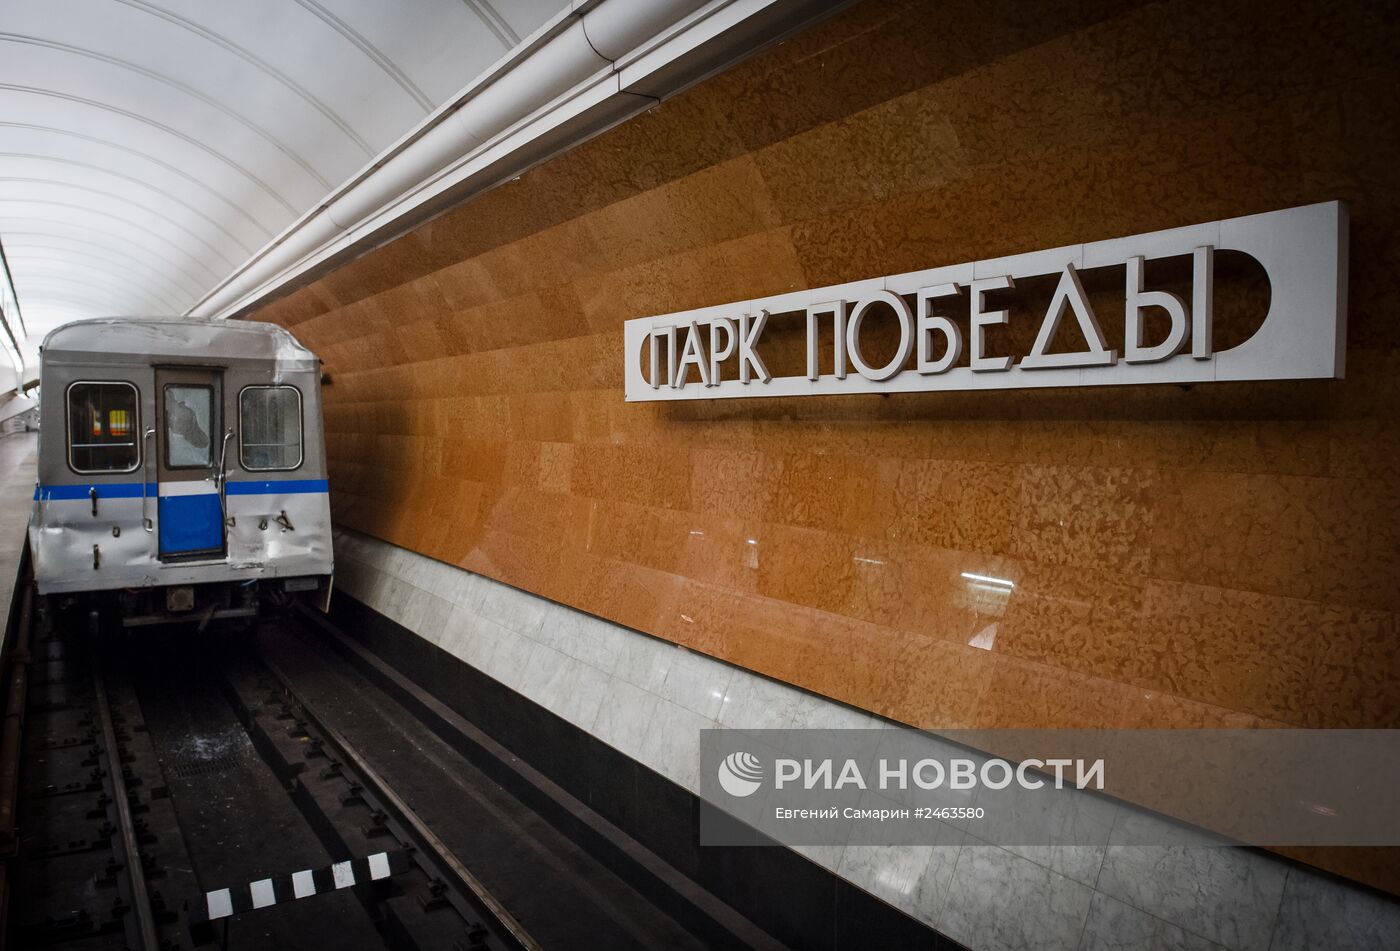 С.Собянин возложил цветы у метро "Парк Победы"